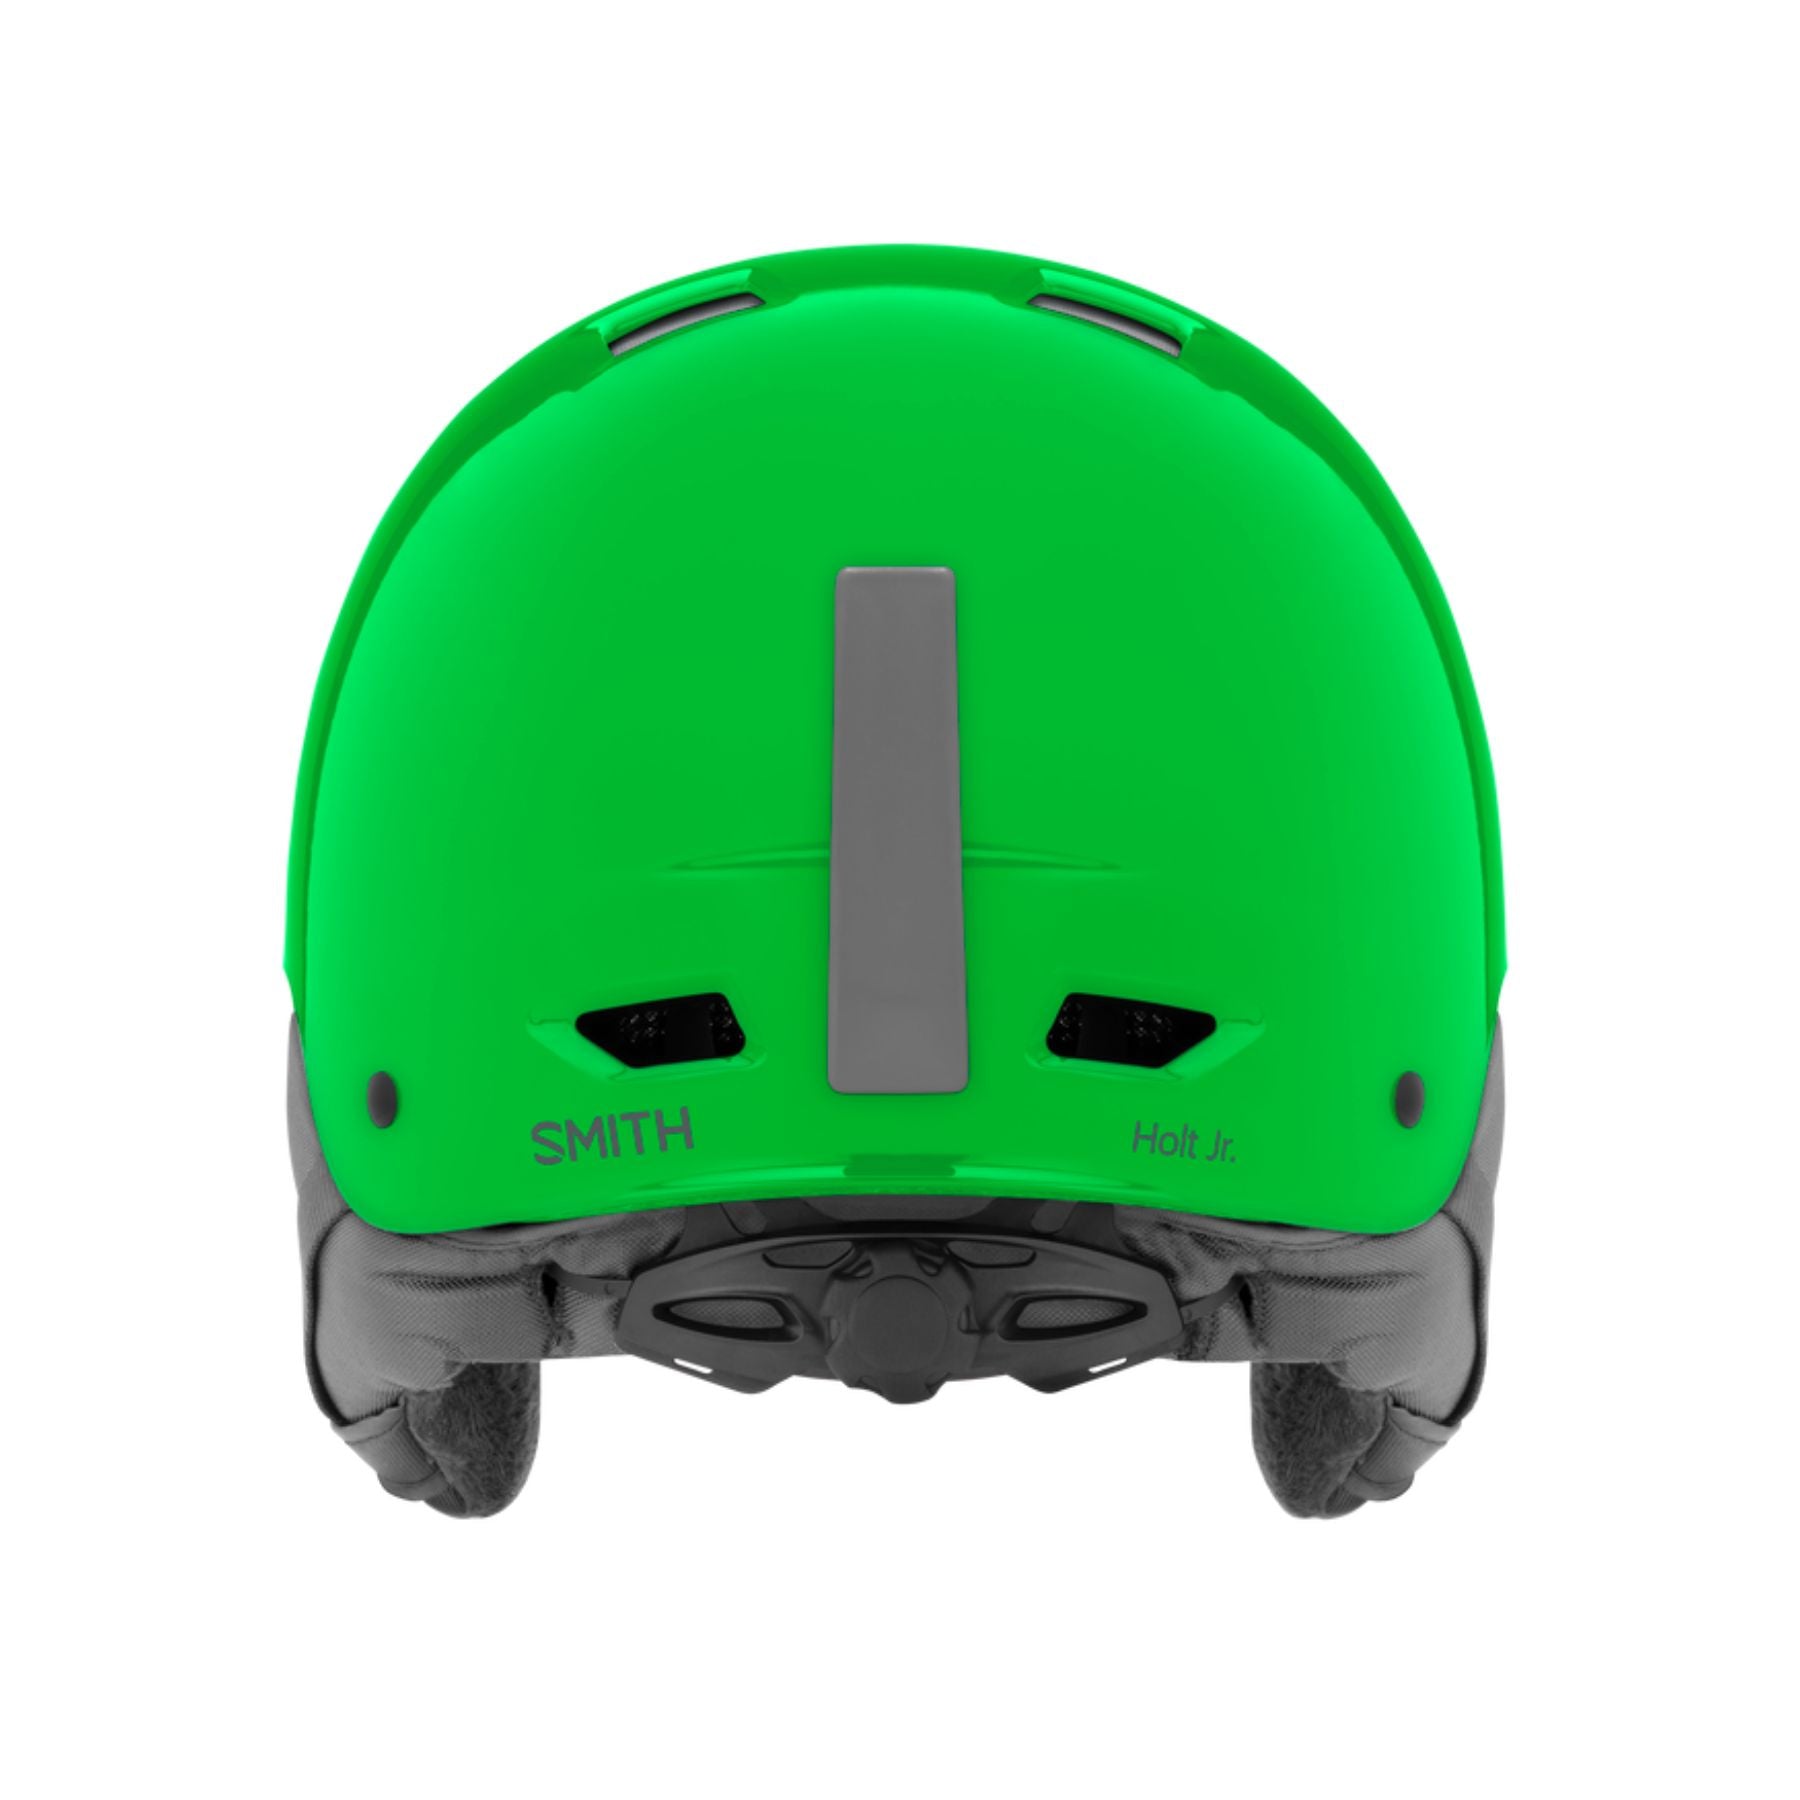 Smith Holt Jr Helmet in Slime